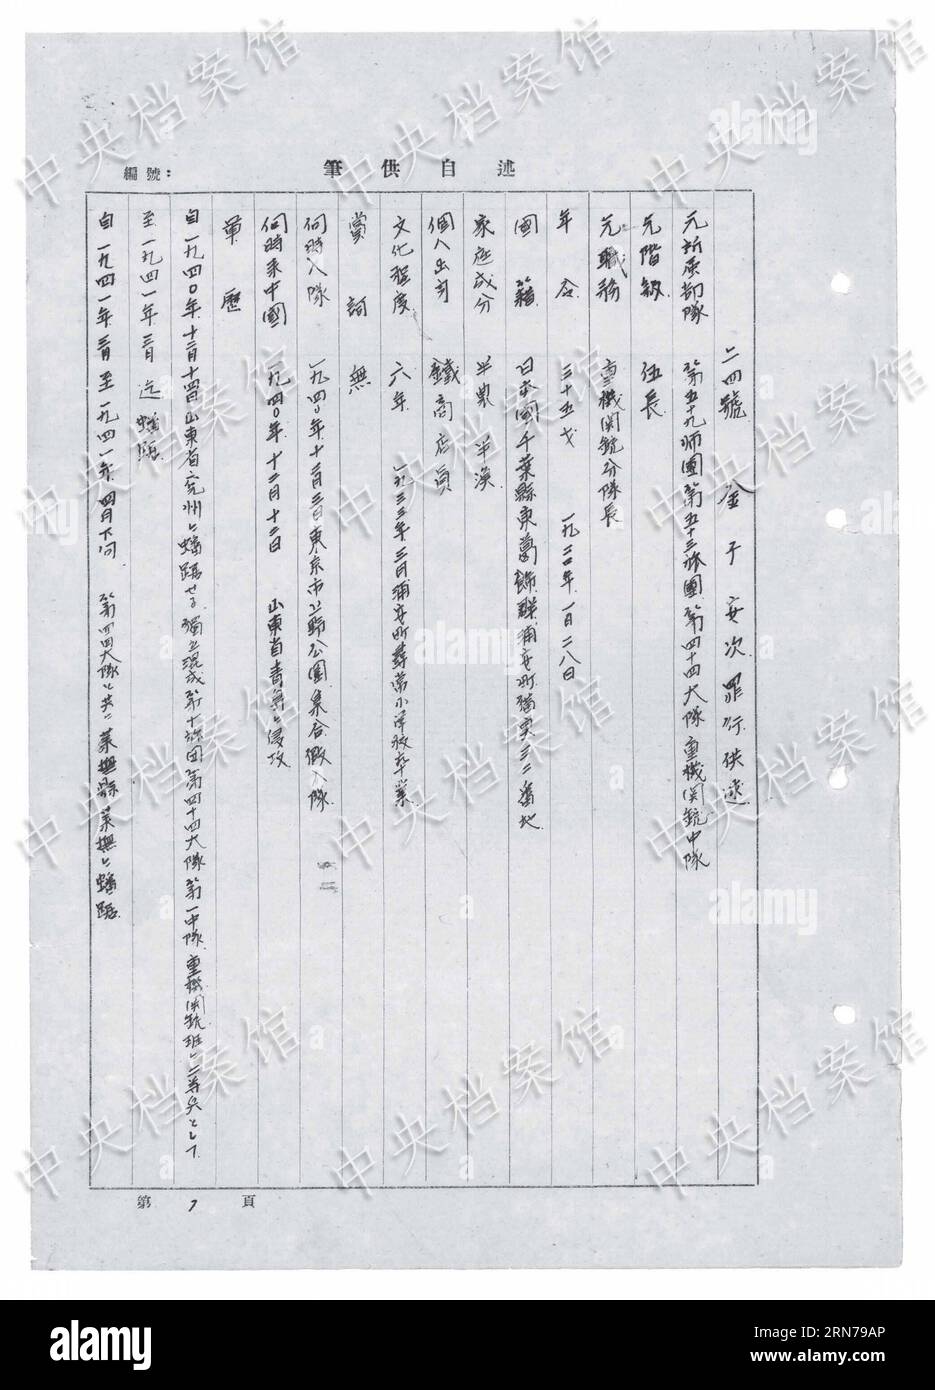 (150827) -- PEKING, 27. August 2015 () -- Foto veröffentlicht am 27. August 2015 von der Staatsarchivverwaltung Chinas auf seiner Website zeigt einen Auszug aus dem handschriftlichen Geständnis des japanischen Kriegsverbrechers Yasuji Kaneko. Das siebzehnte in einer Reihe von 31 handschriftlichen Geständnissen japanischer Kriegsverbrecher, die online veröffentlicht wurden, zeigt Yasuji Kaneko, der 1920 geboren wurde. Er trat 1940 dem japanischen Angriffskrieg gegen China bei und wurde im August 1945 gefangen genommen. Kaneko und seine Gefährten verhafteten zwei chinesische Bauern im Laiwu County der Provinz Shandong, die ihre Hände hinter Th gefesselt hatten Stockfoto